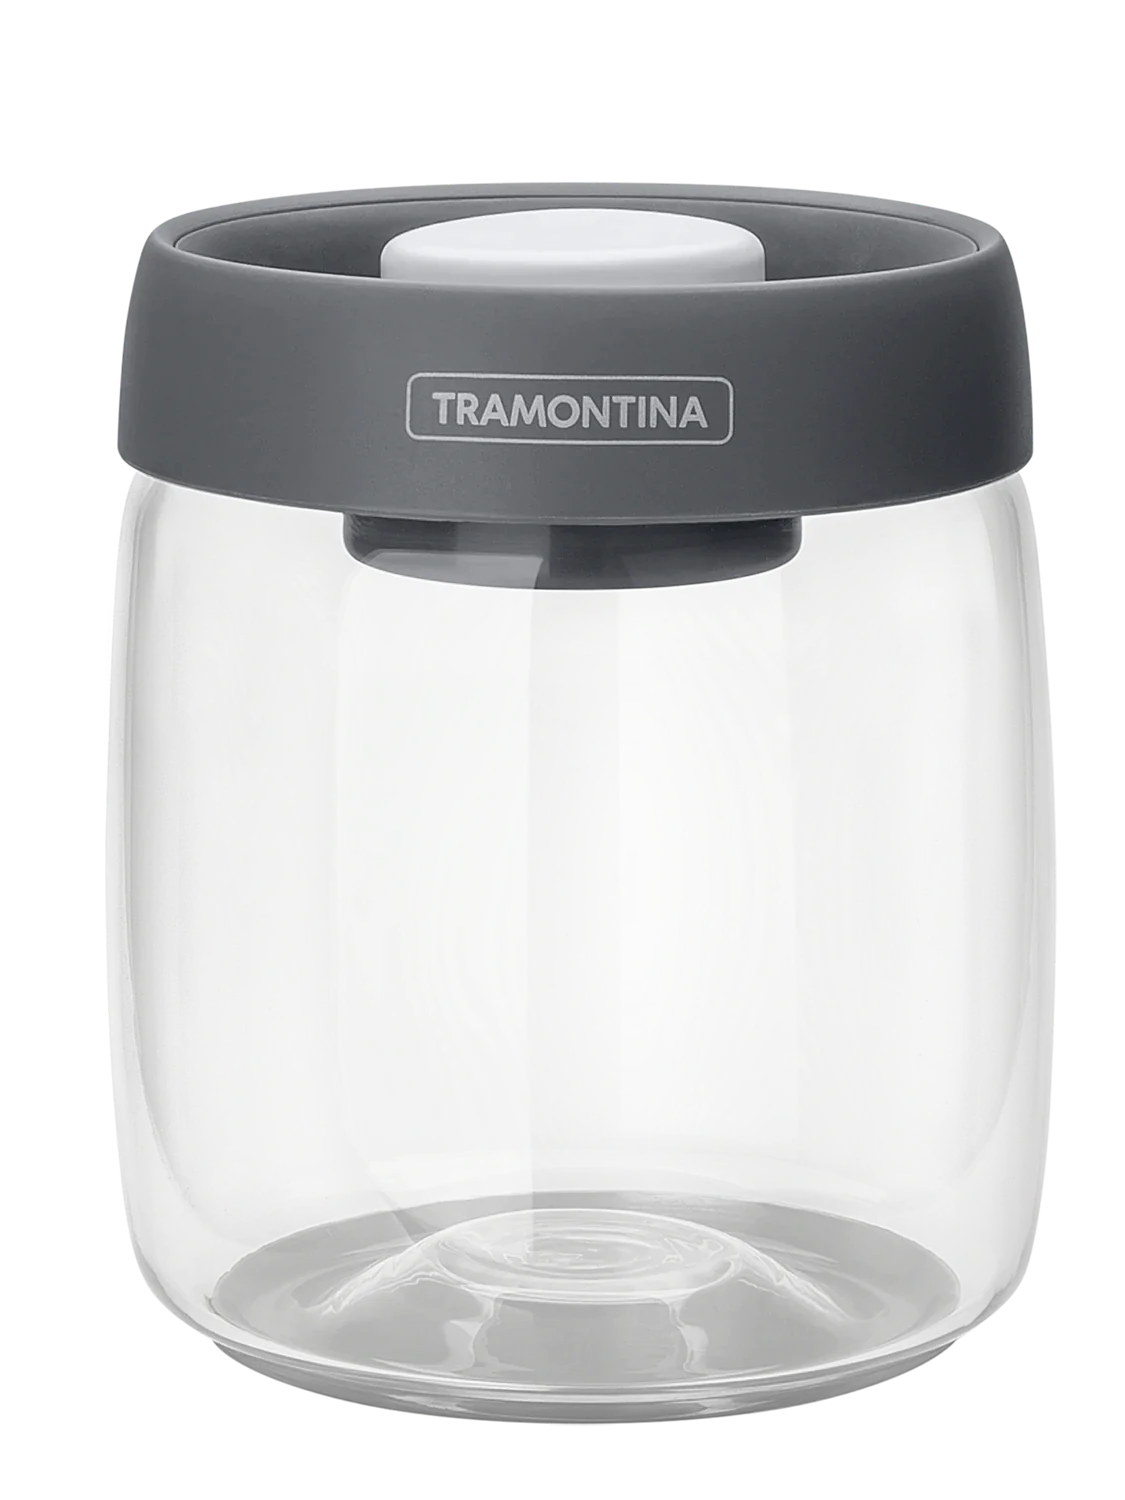 Tramontina 61225040 Purezza üveg tárolóedény vákum fedővel